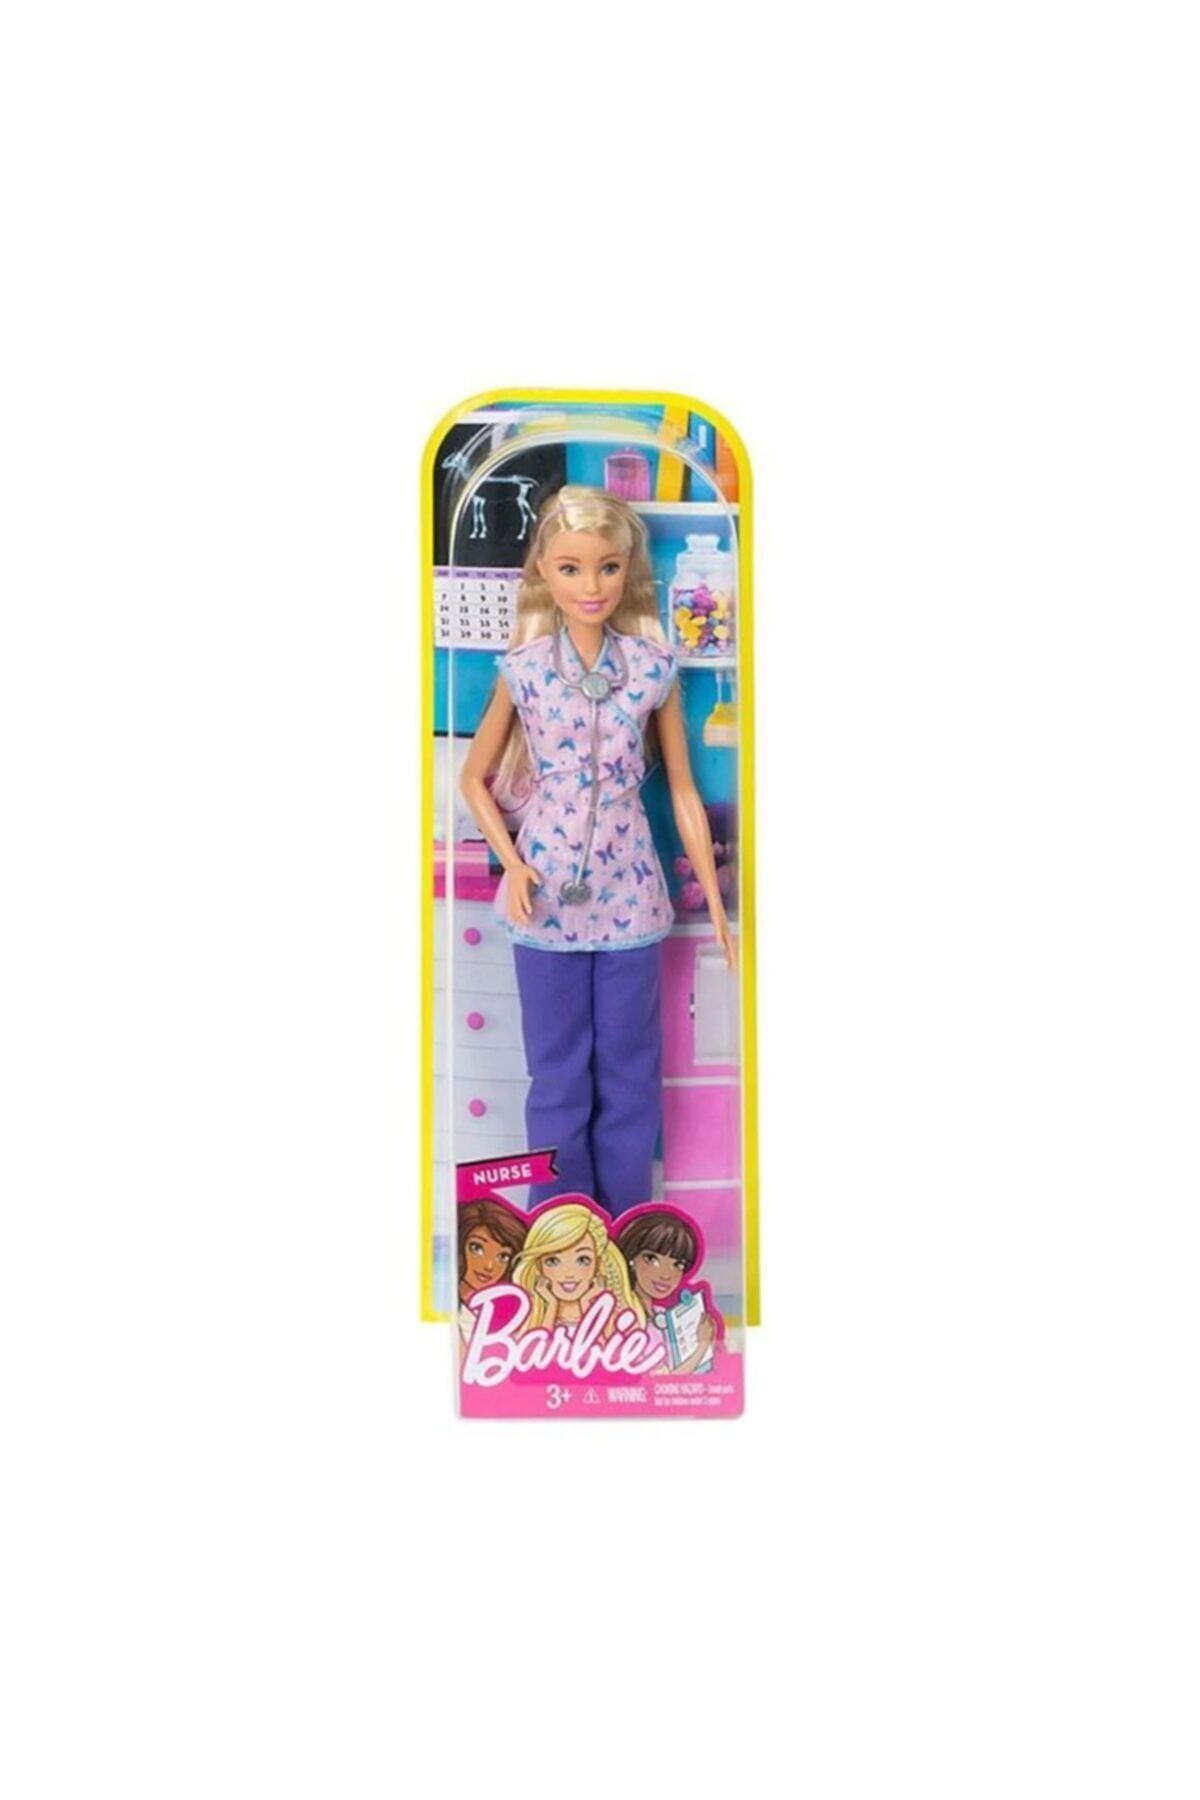 Barbie Kariyer Bebekleri DVF50-DVF57 MATDVF50-DVF57